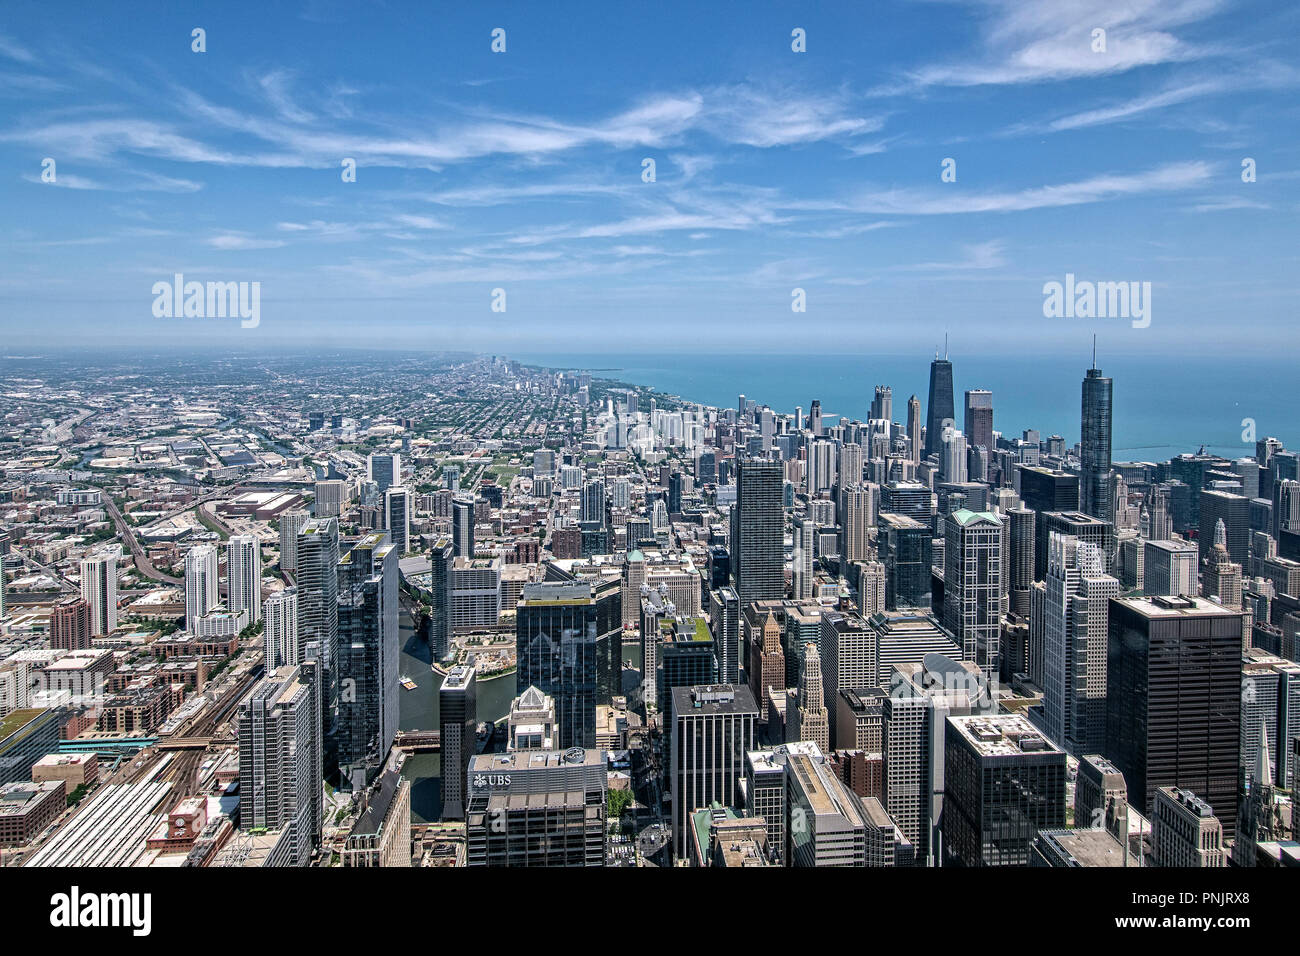 Nördliche Aussicht auf Downtown Chicago Wolkenkratzer und Lake Michigan von Willis Tower Skydeck, Chicago, IL. Stockfoto